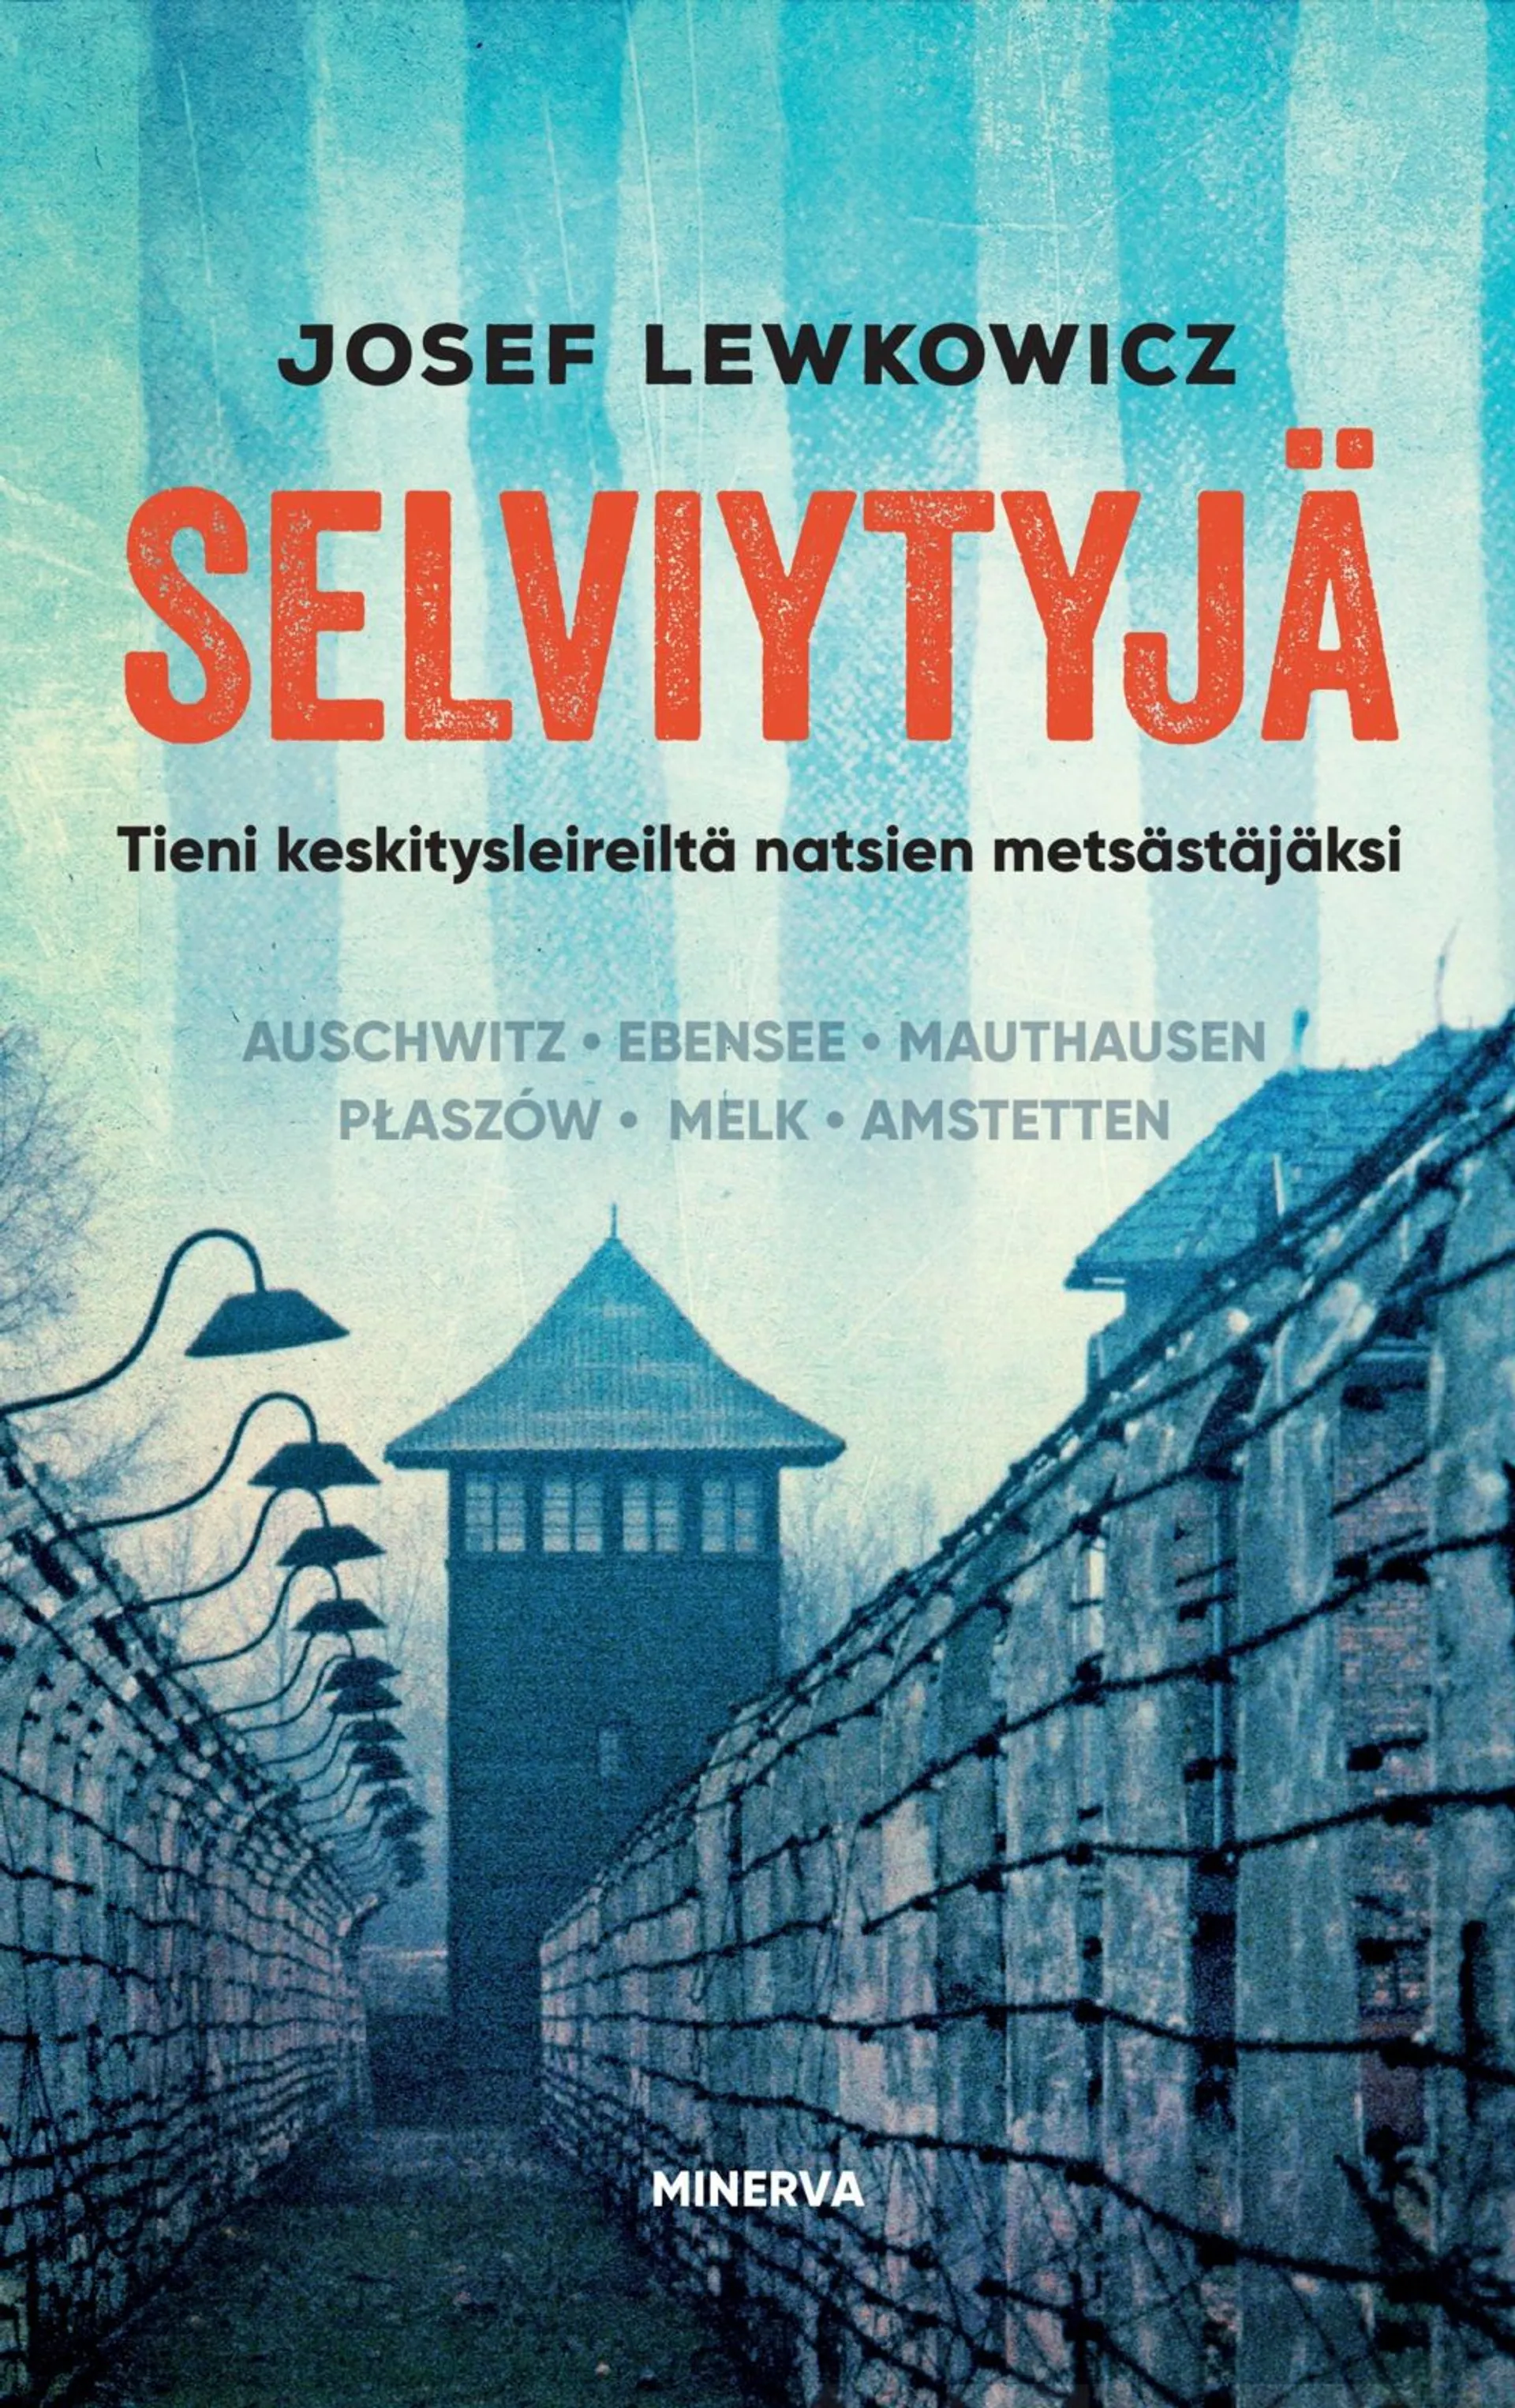 Lewkowicz, Selviytyjä – Tieni keskitysleireiltä natsien metsästäjäksi